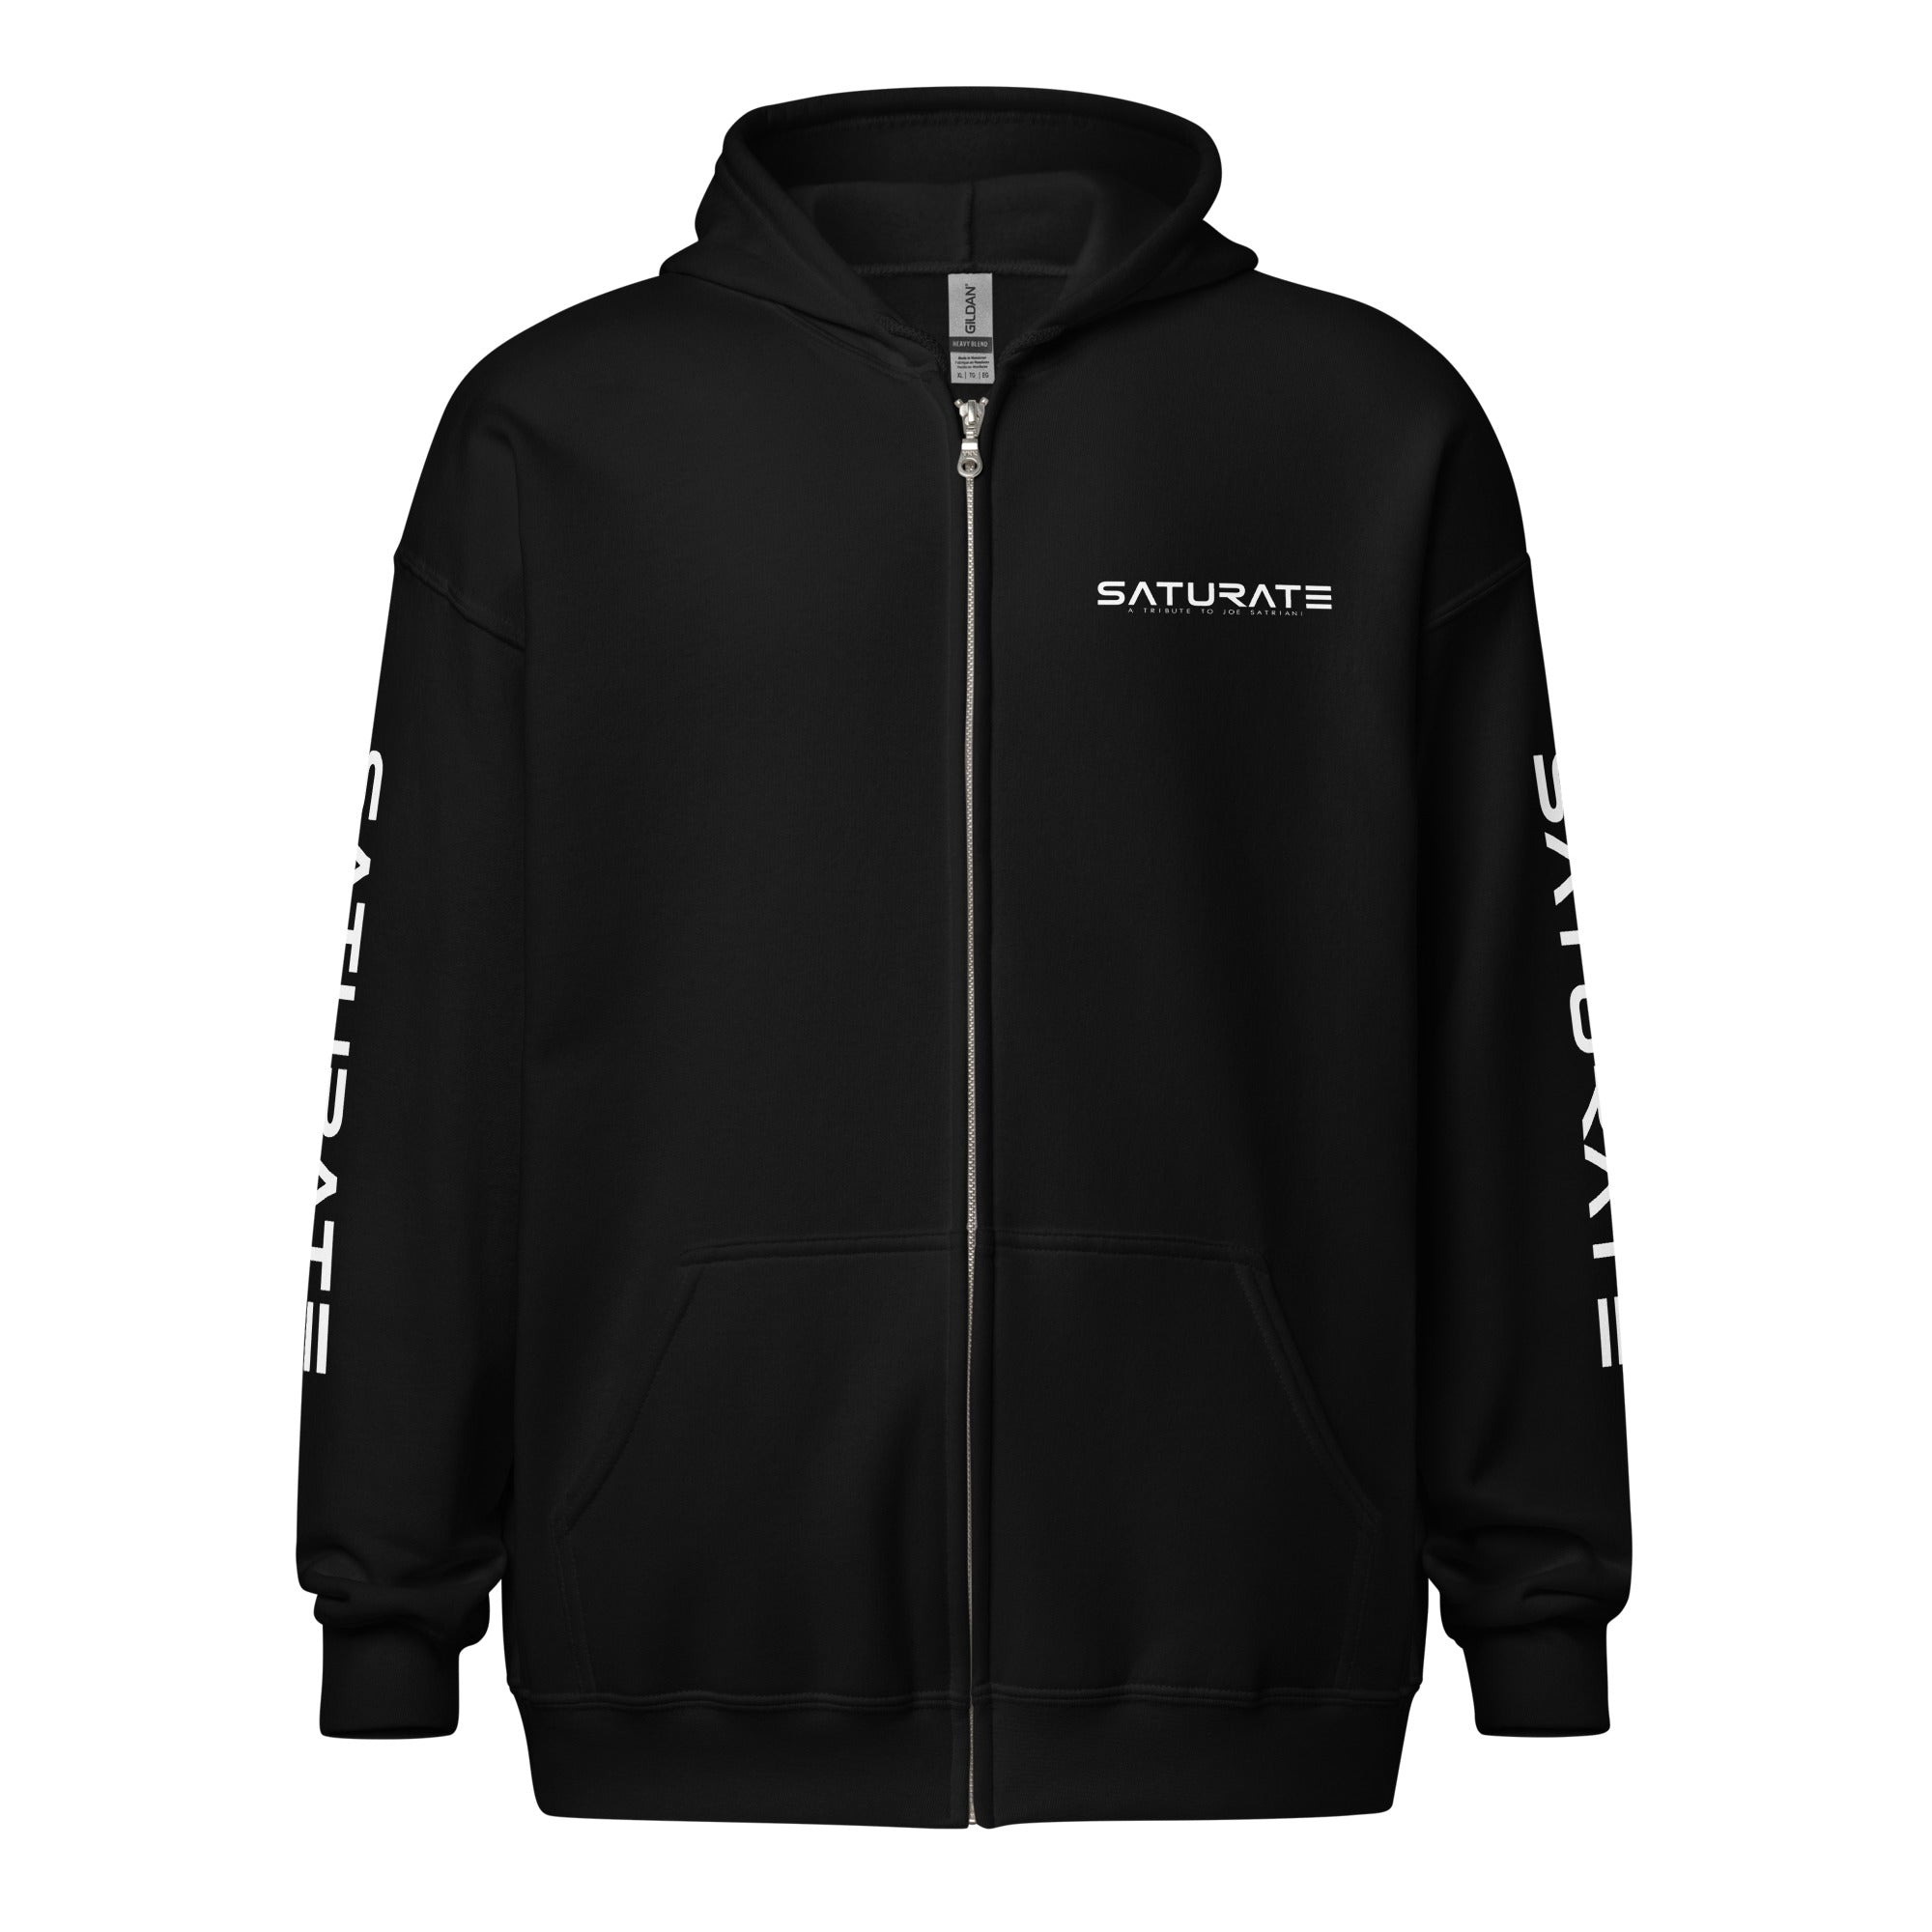 SATURATE  - OFFICIAL Unisex heavy blend zip hoodie